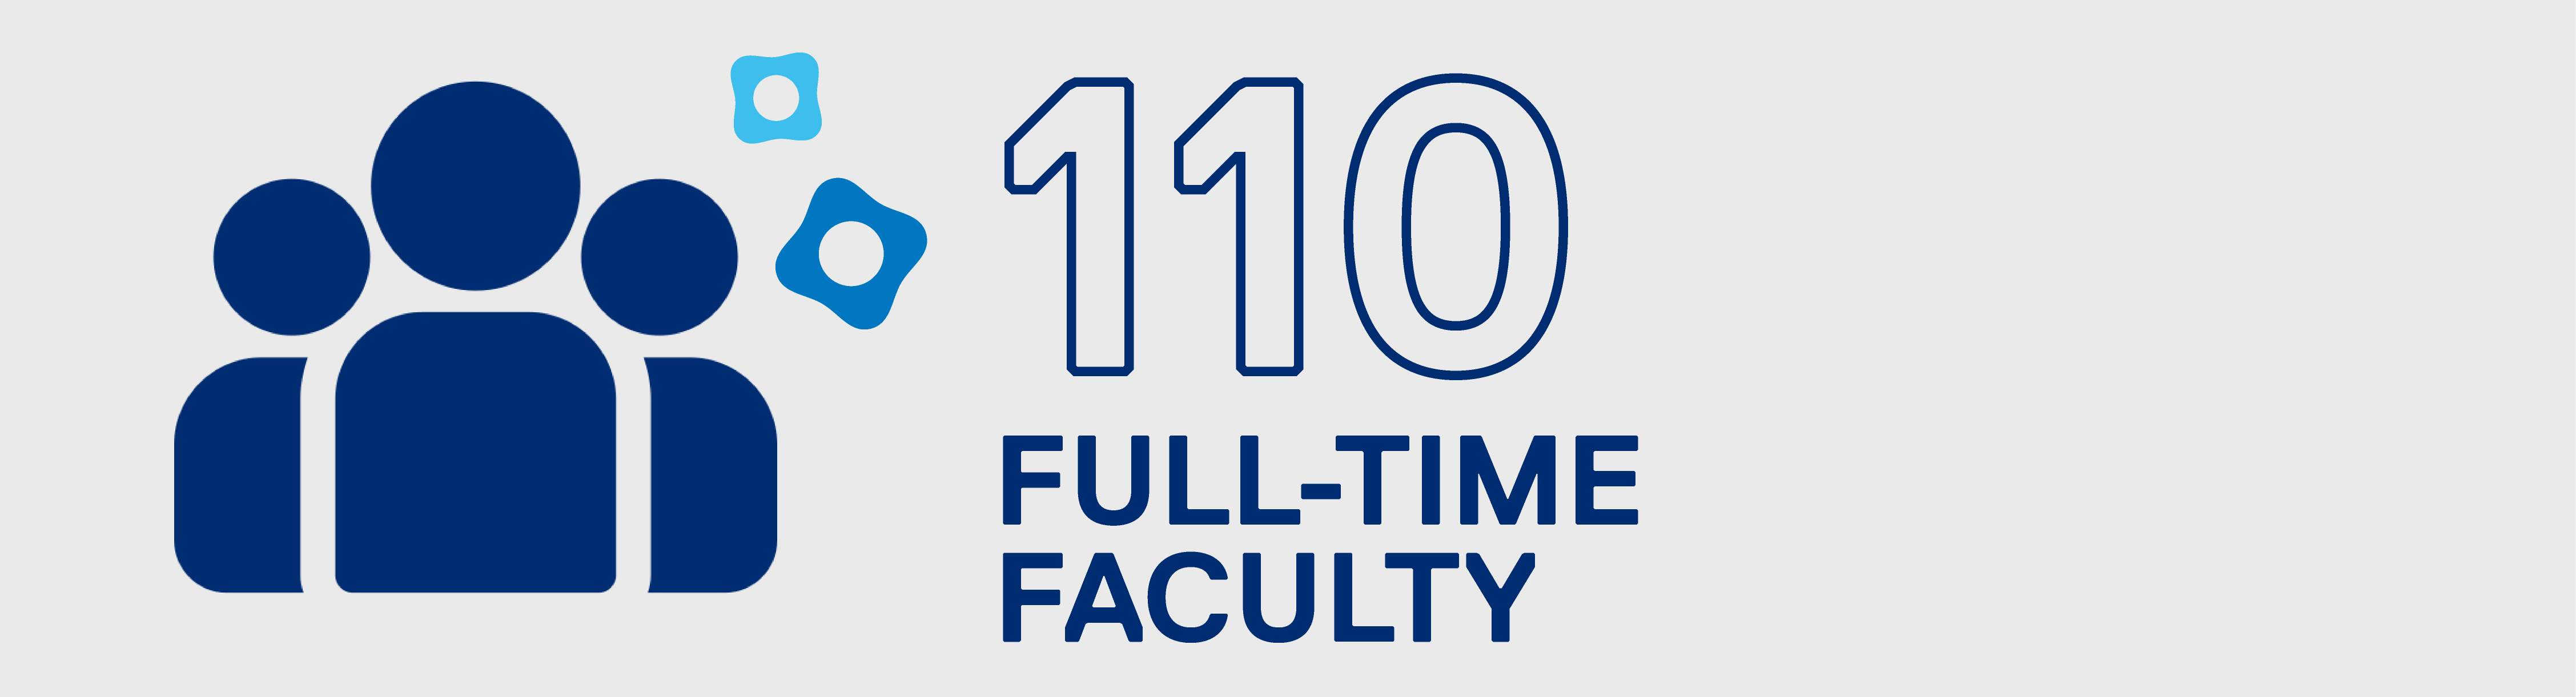 One hundred ten full-time faculty